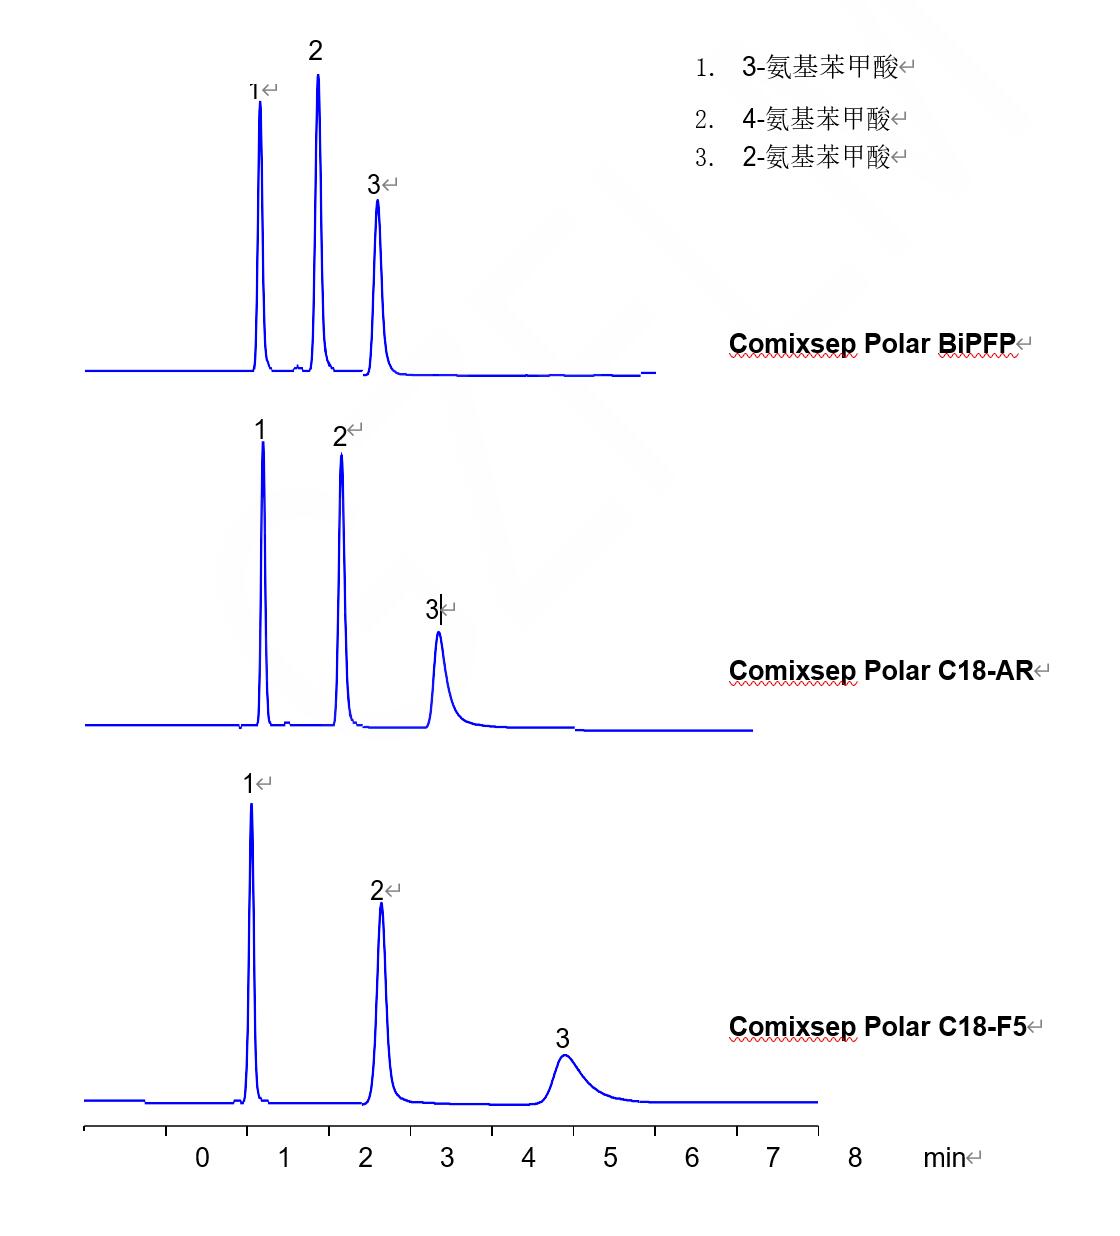 Comixsep 三款固定相分离氨基苯甲酸异构体的选择性对比